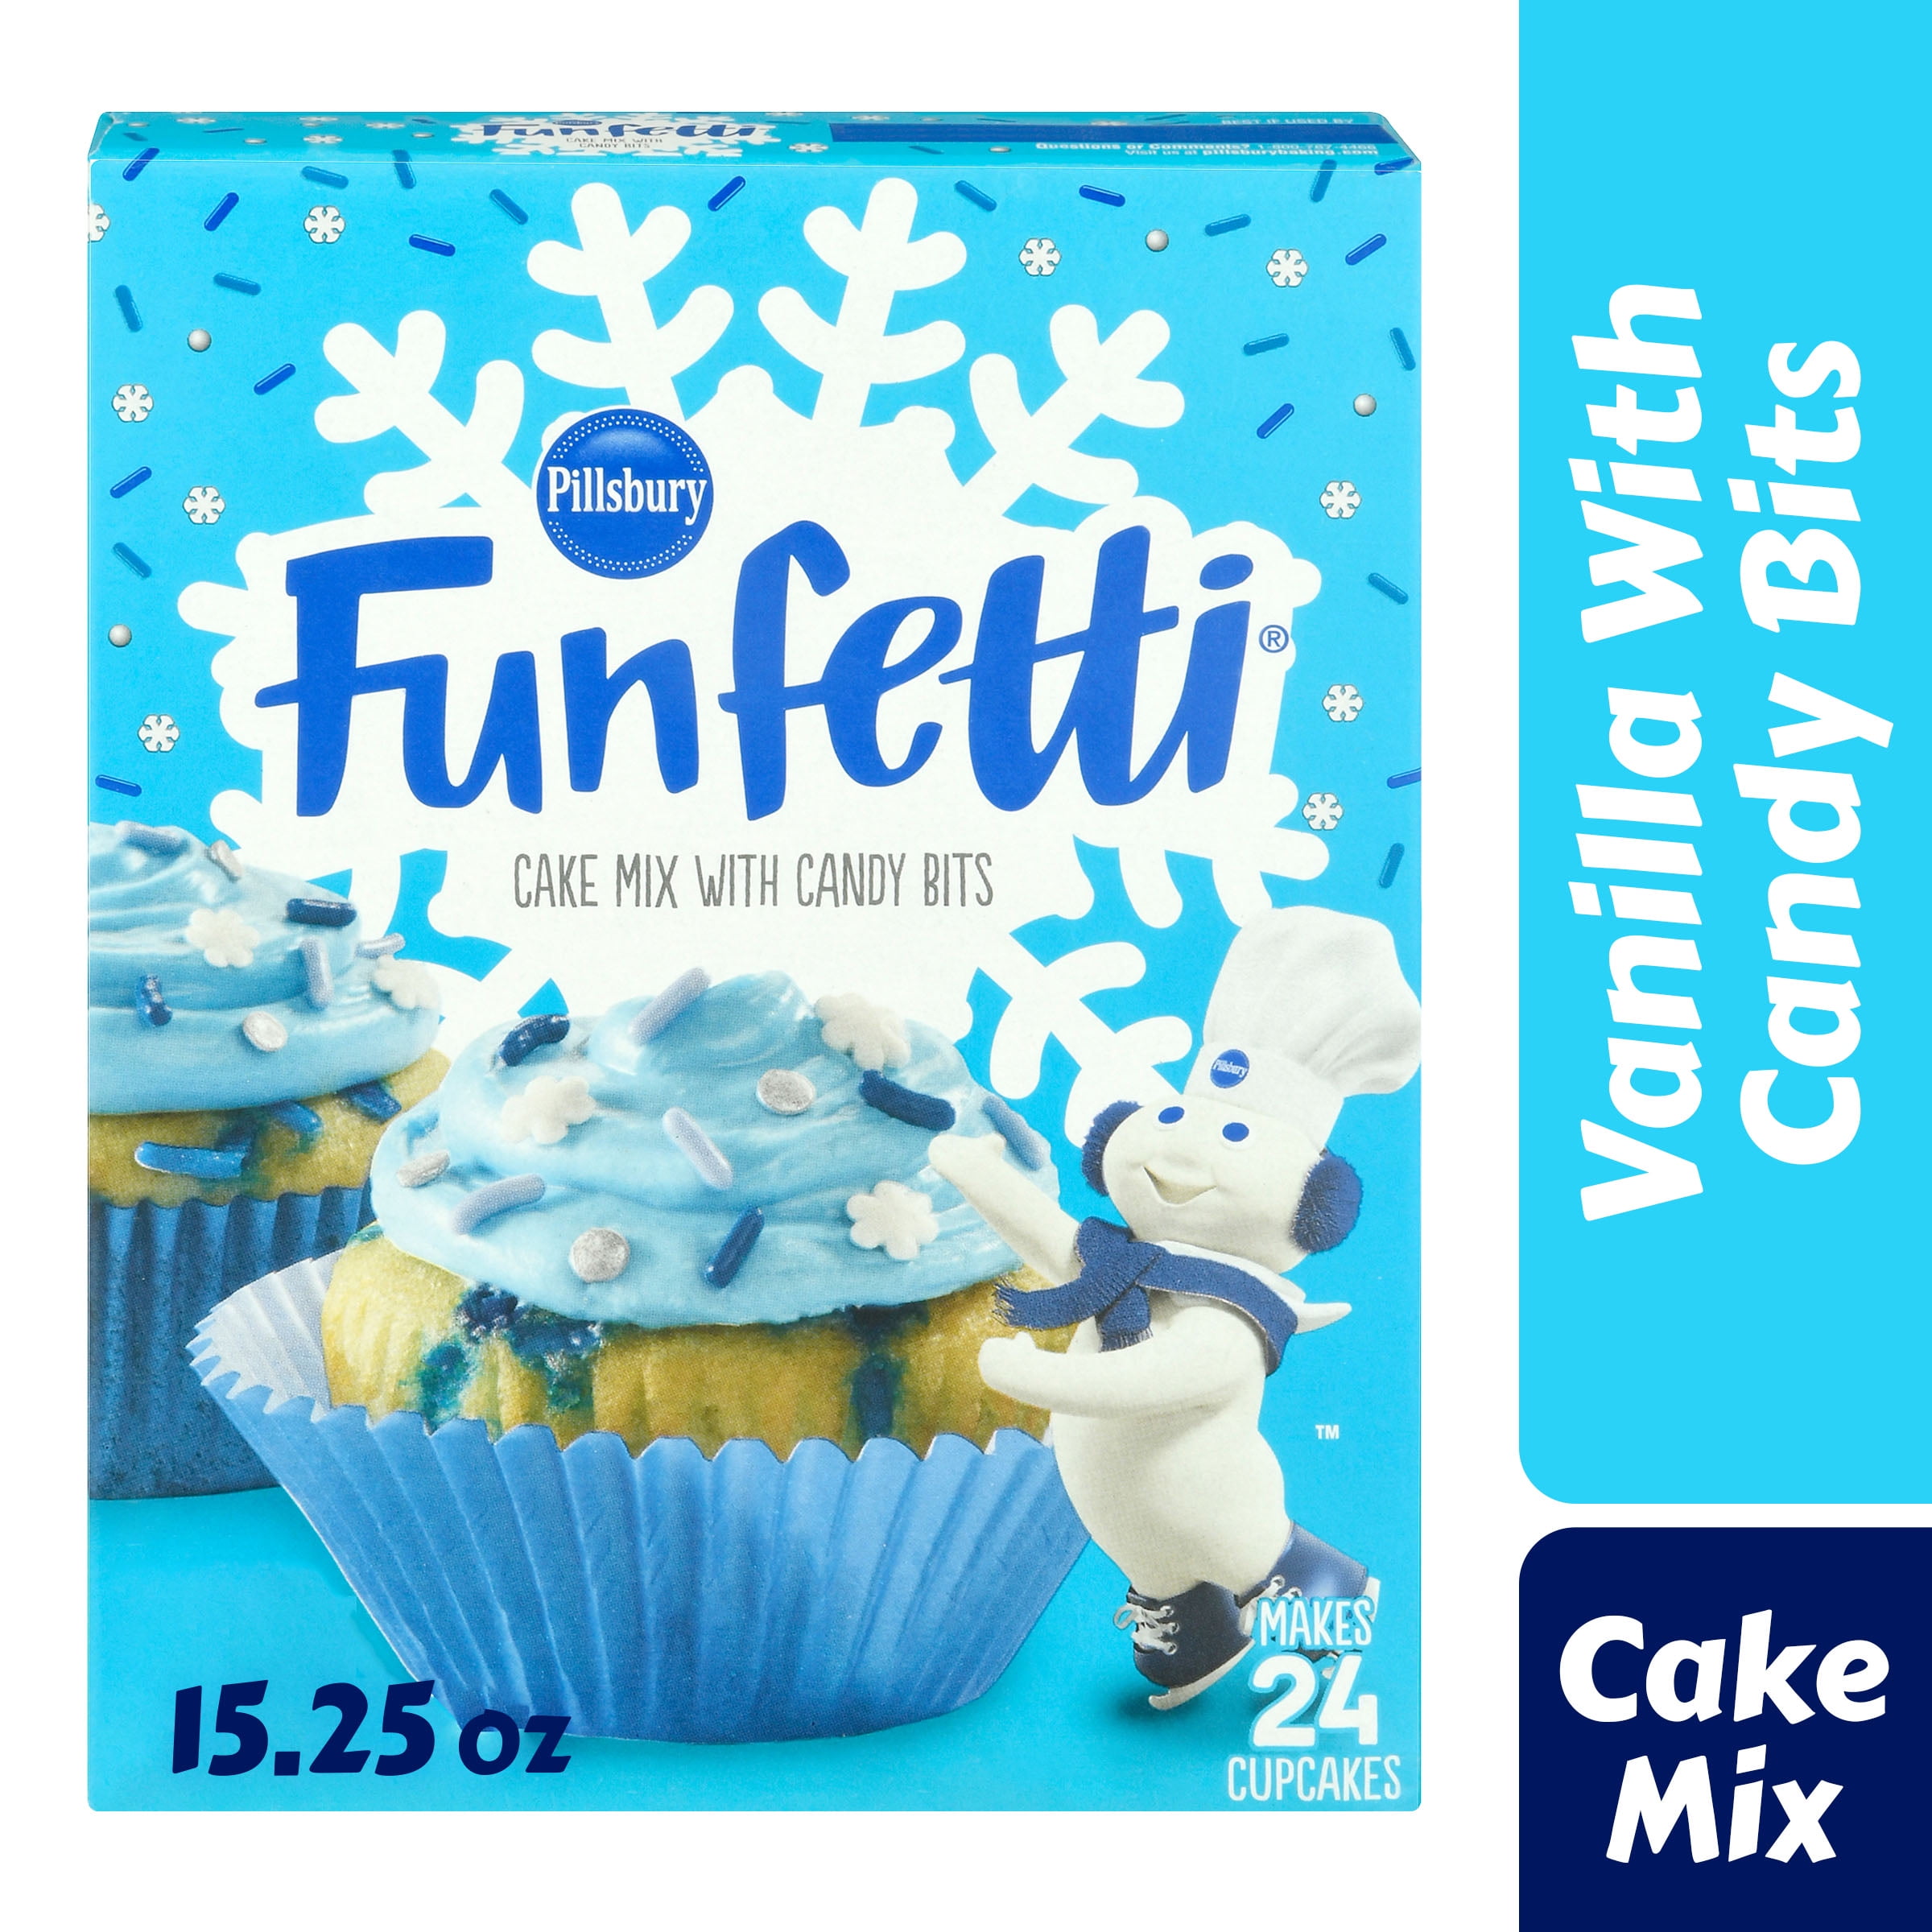 Pillsbury Funfetti Winter Cake Mix with Candy Bits, 15.25 Oz Box